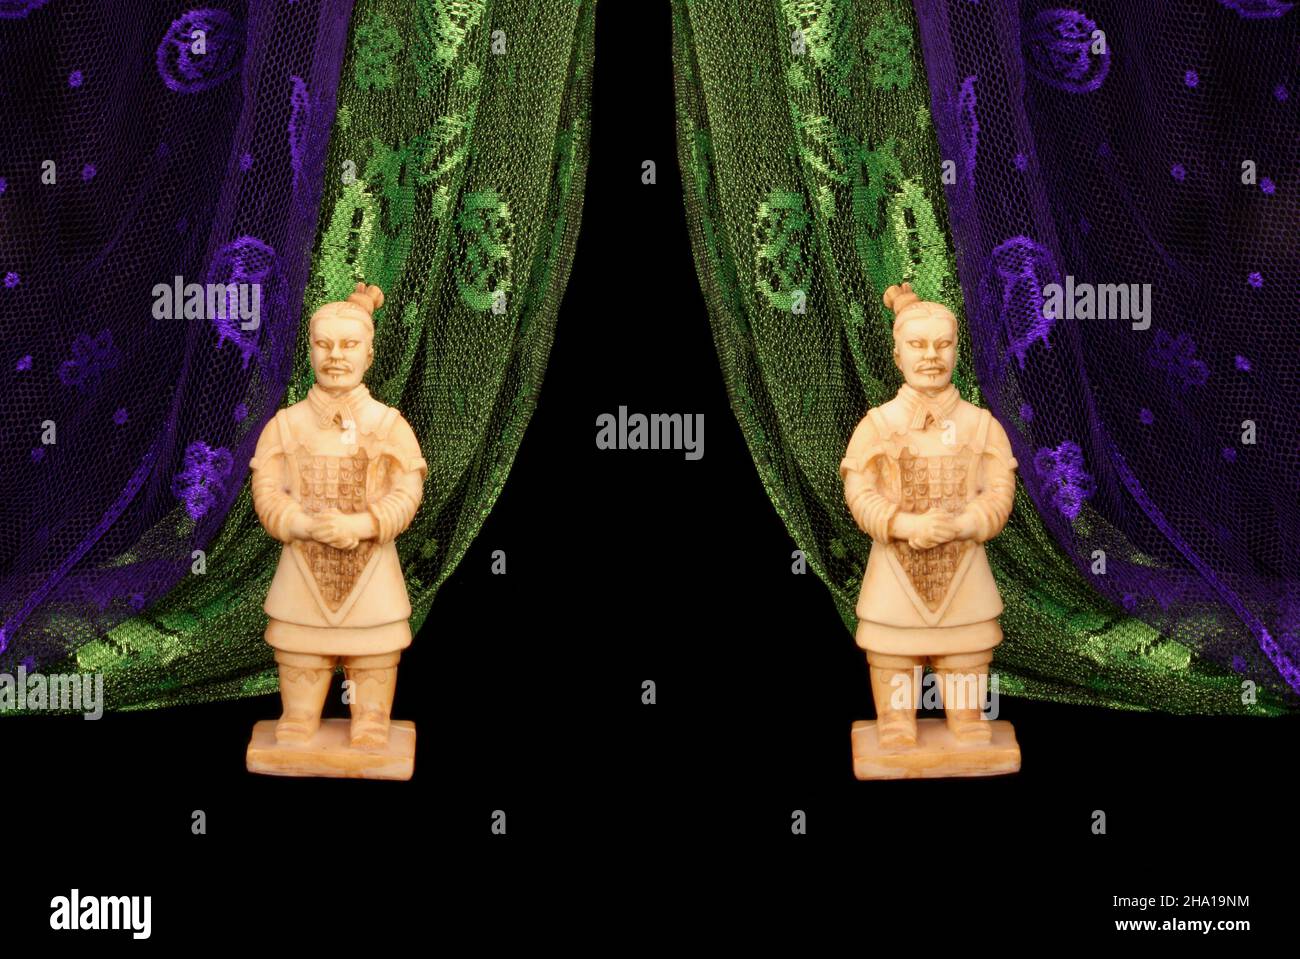 Statues de guerrier asiatique sur fond noir avec foulard vert et violet Banque D'Images